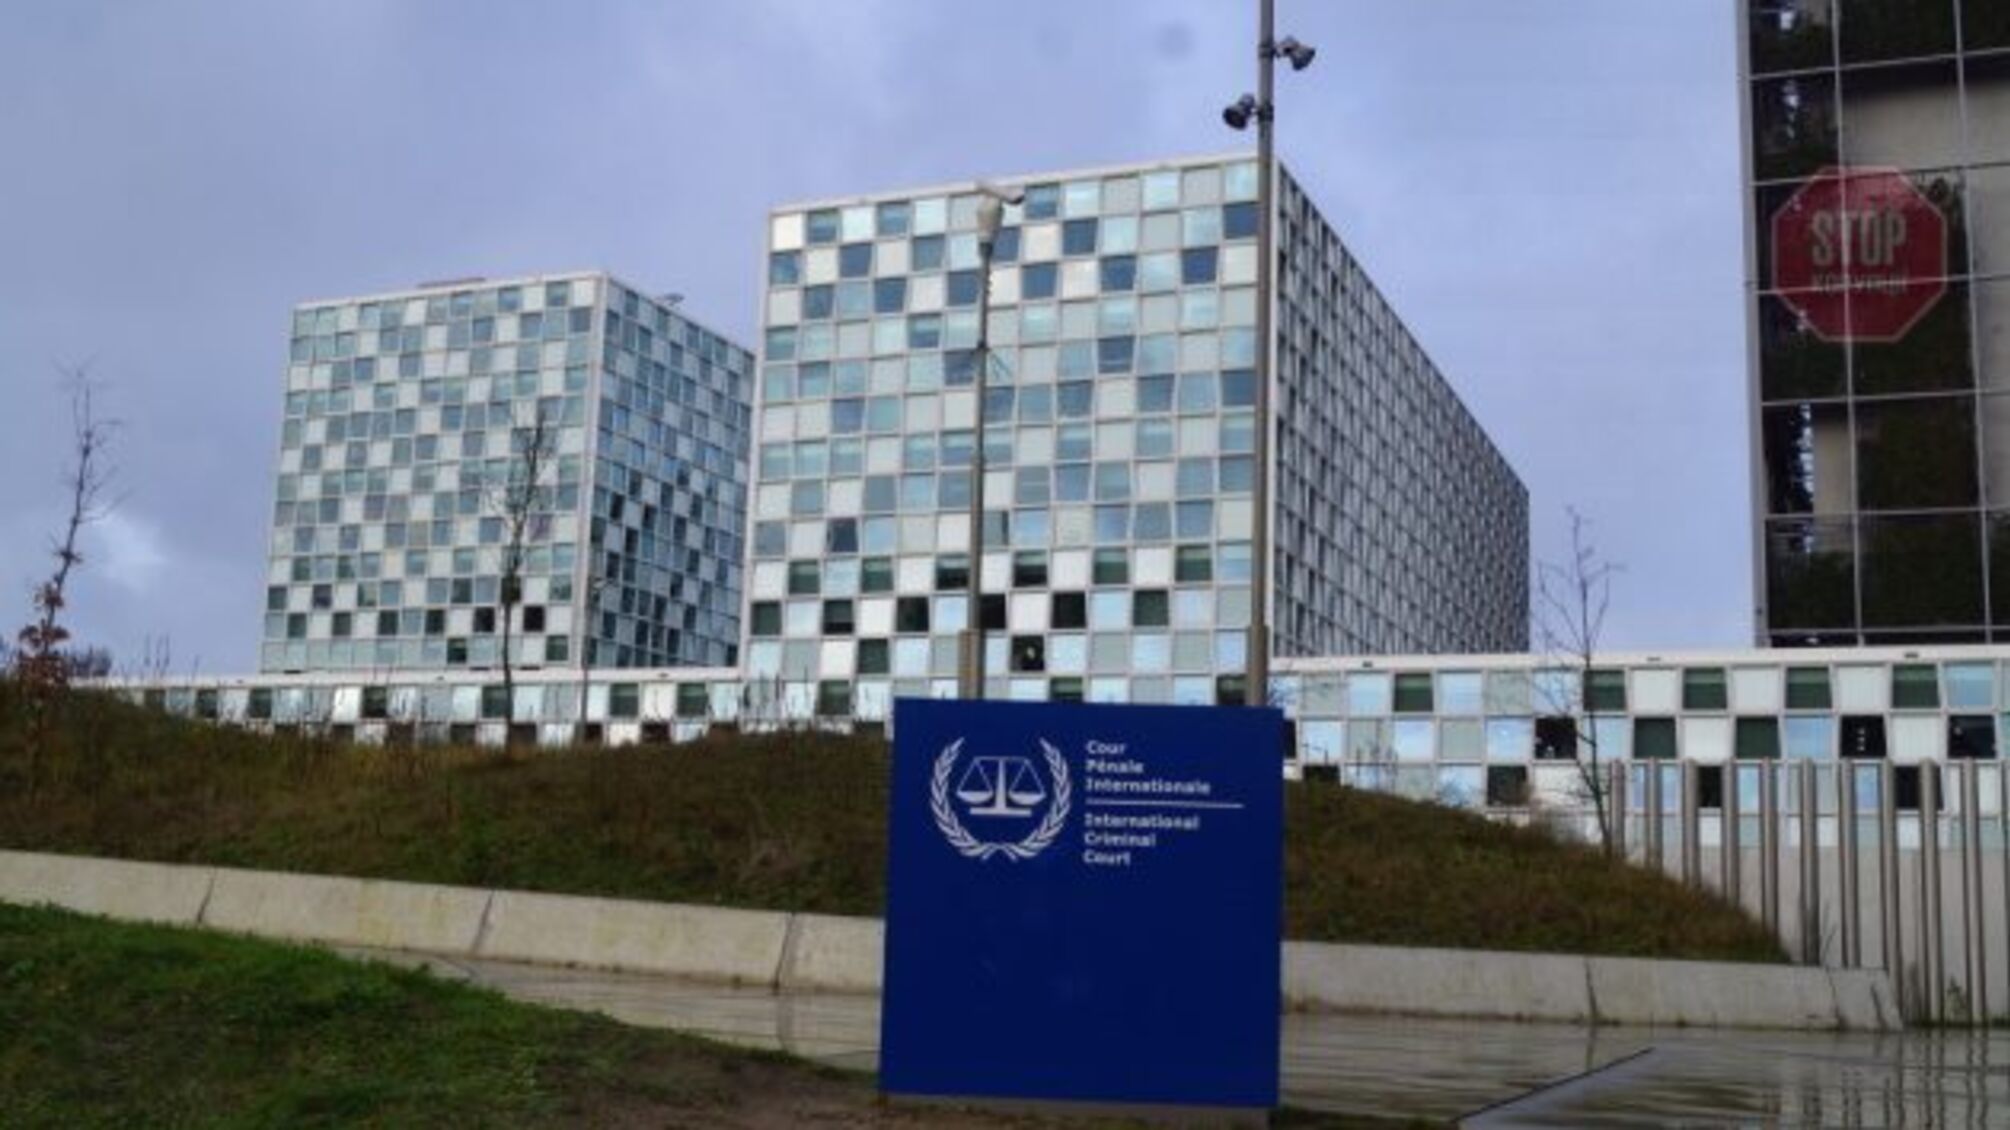 Уже осенью суд в Гааге может начать рассмотр дела об обвинении рф в геноциде украинцев